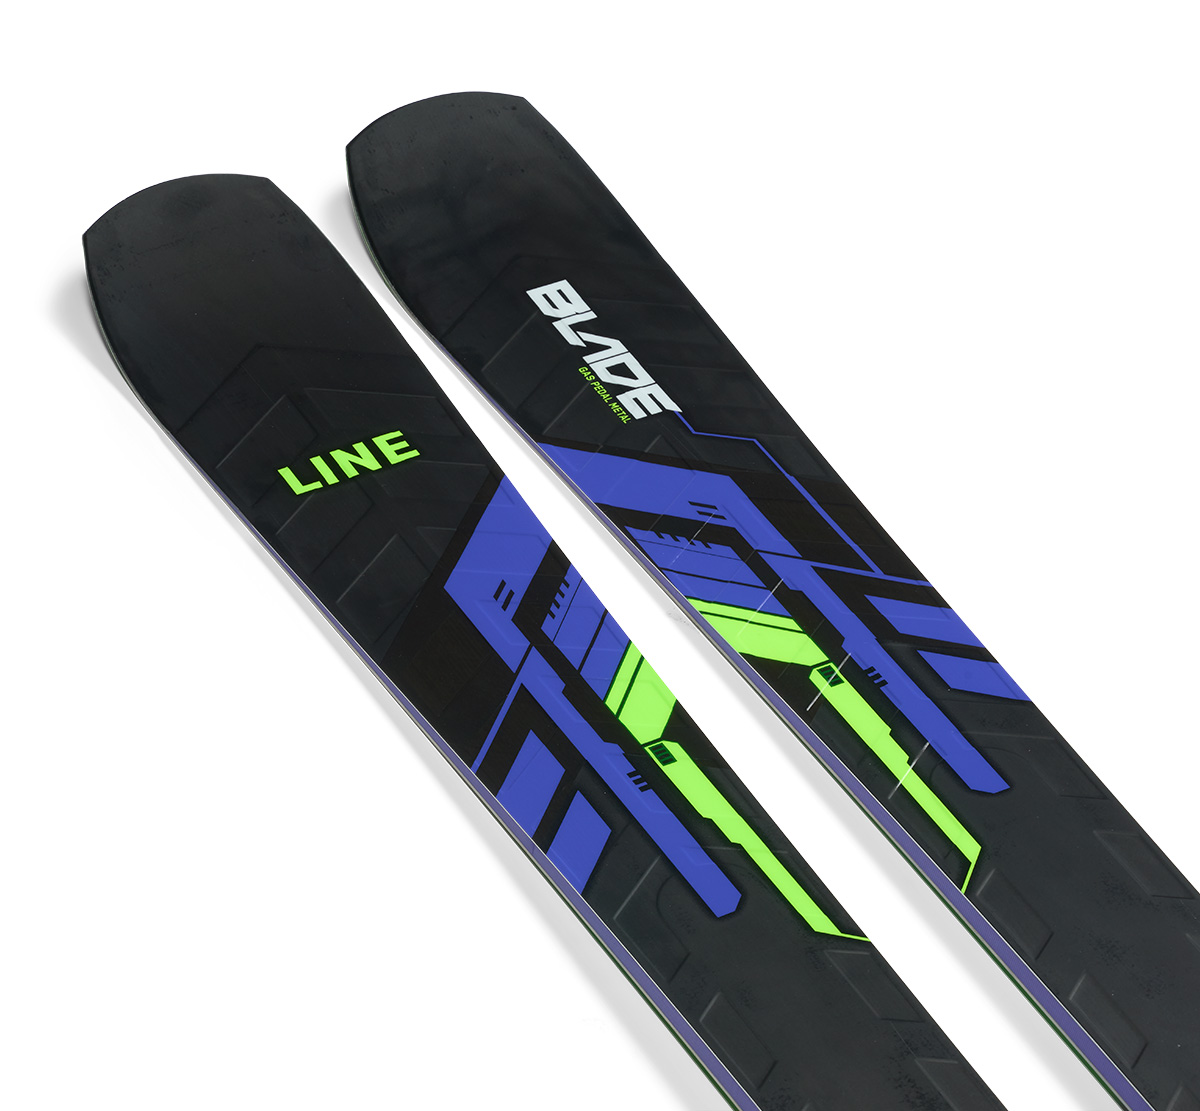 スキー 4点セット VOLKL 14-15 RTM BIO ライド ザ マウンテン バイオ 155 162cm 金具付き ストック付き グローブ付き カービングスキー 初心者におすすめ 大人用